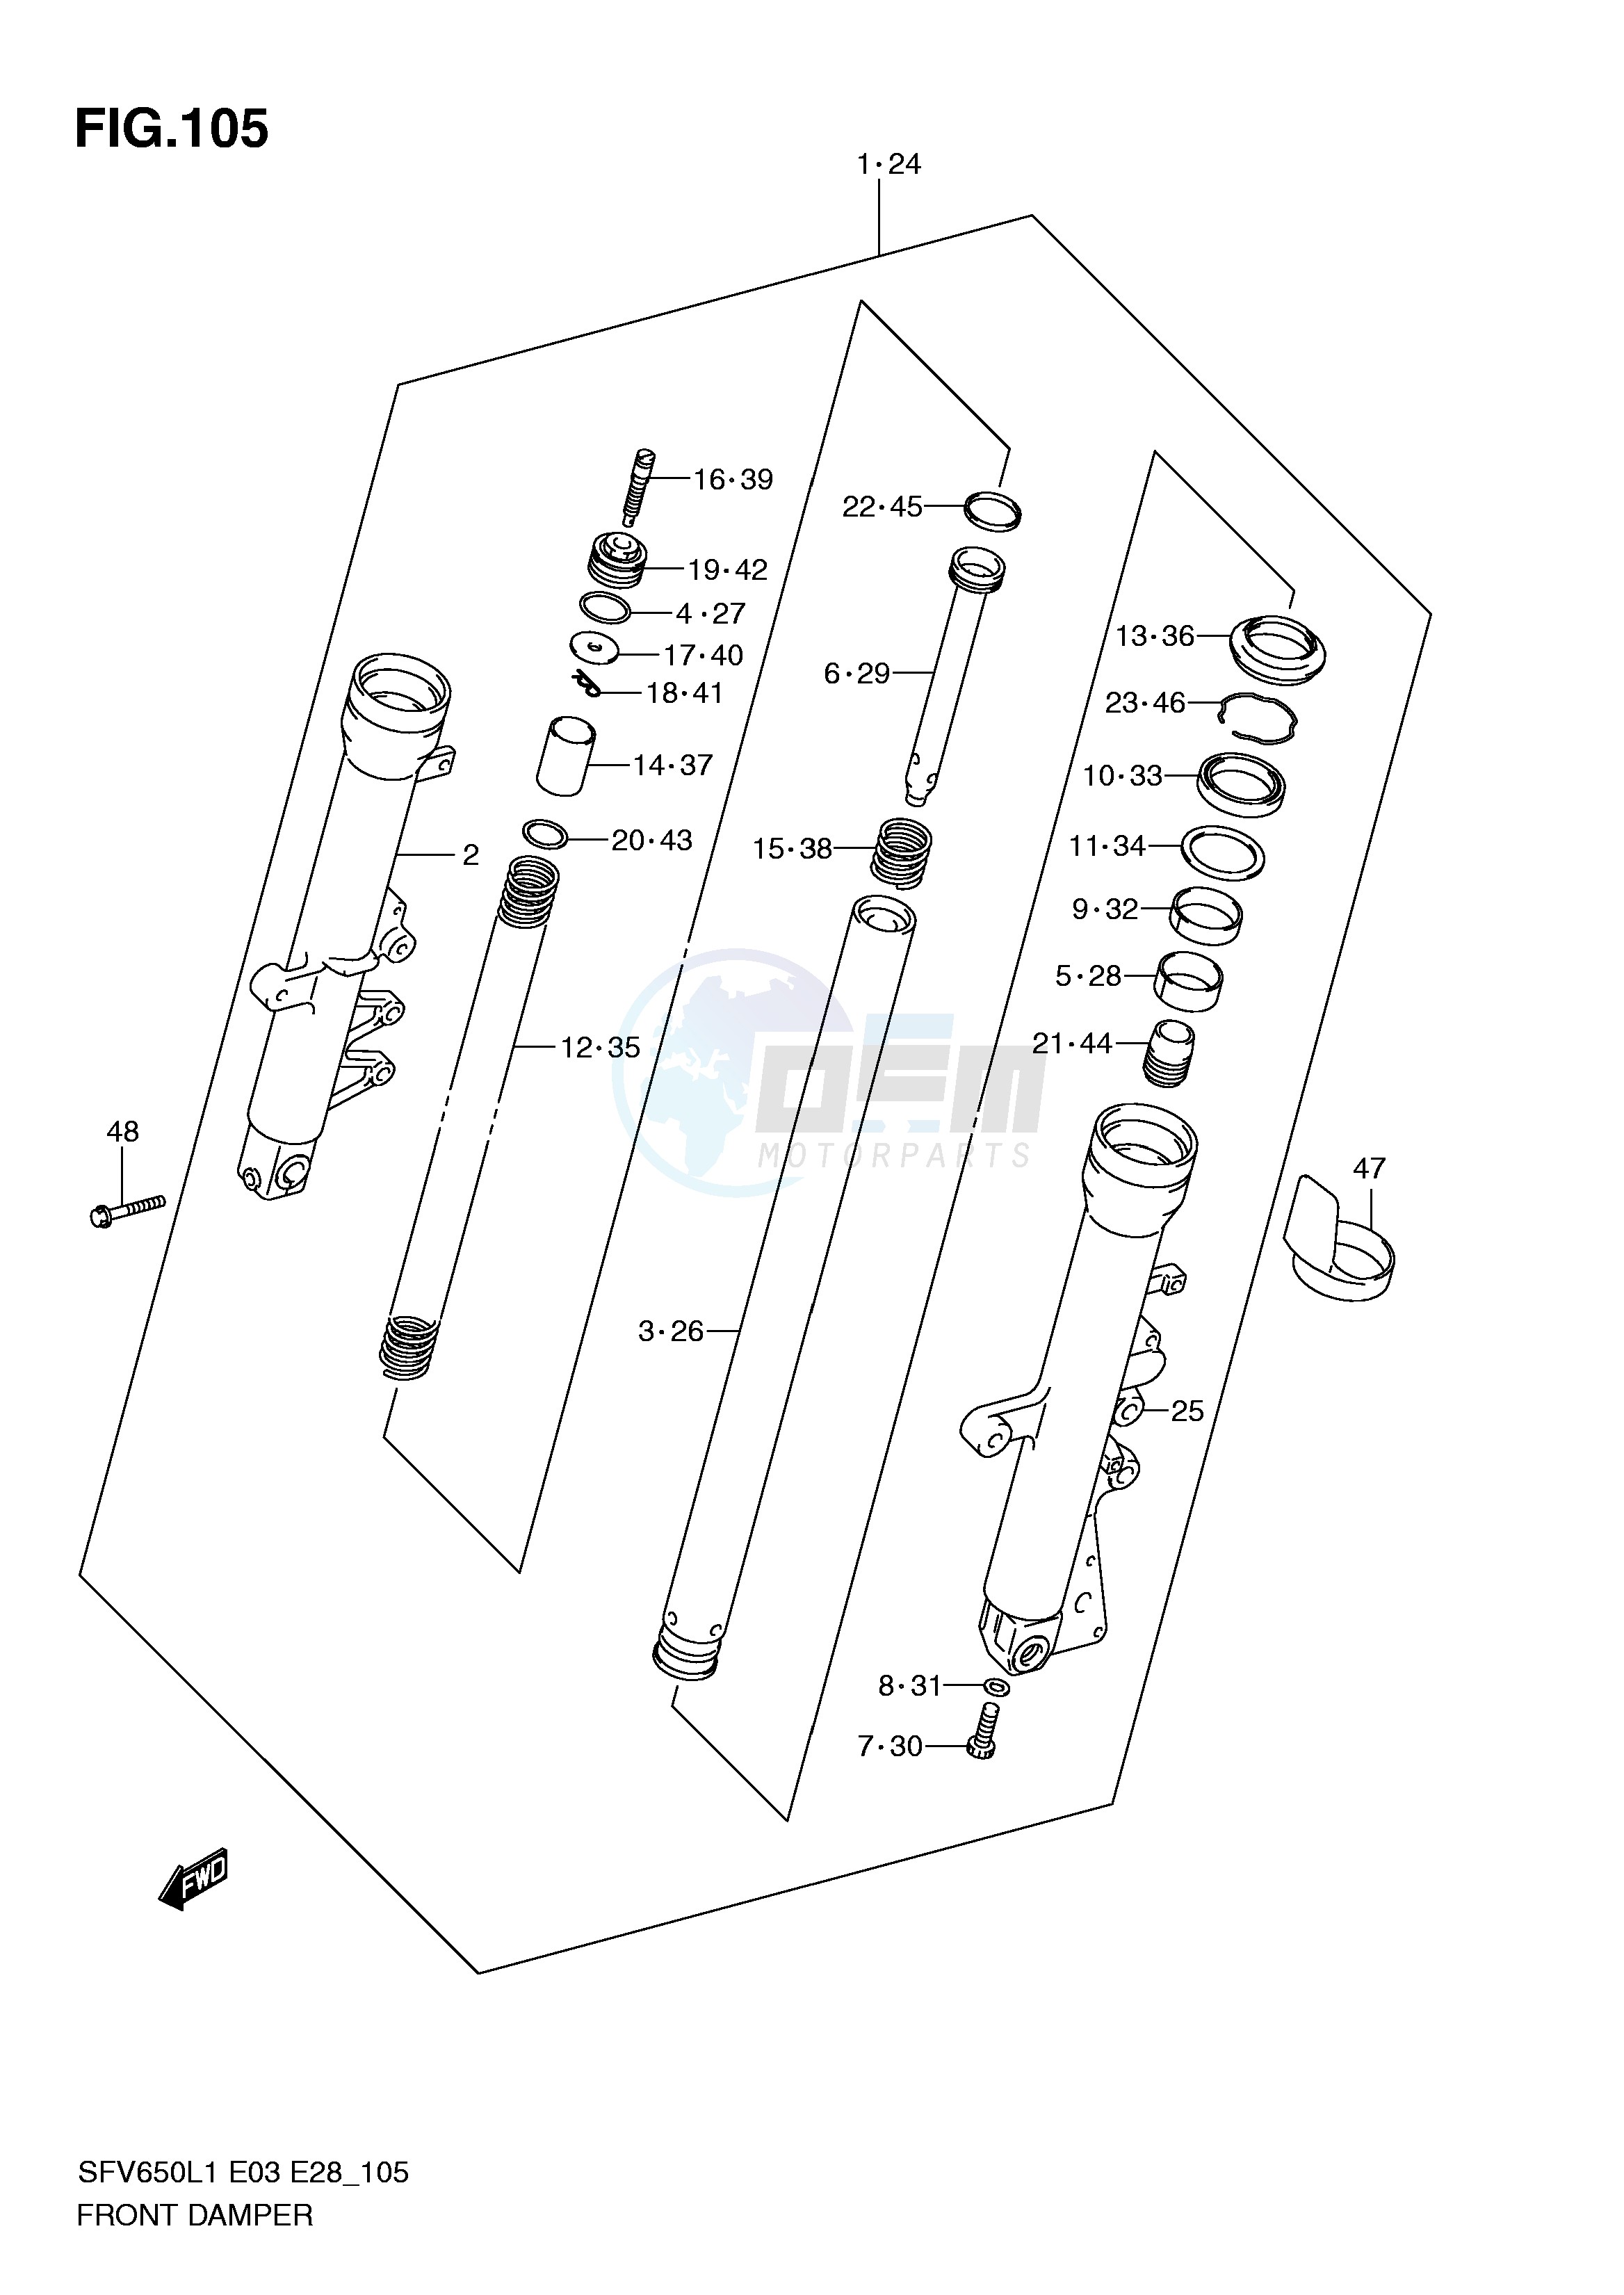 FRONT DAMPER (SFV650L1 E33) blueprint